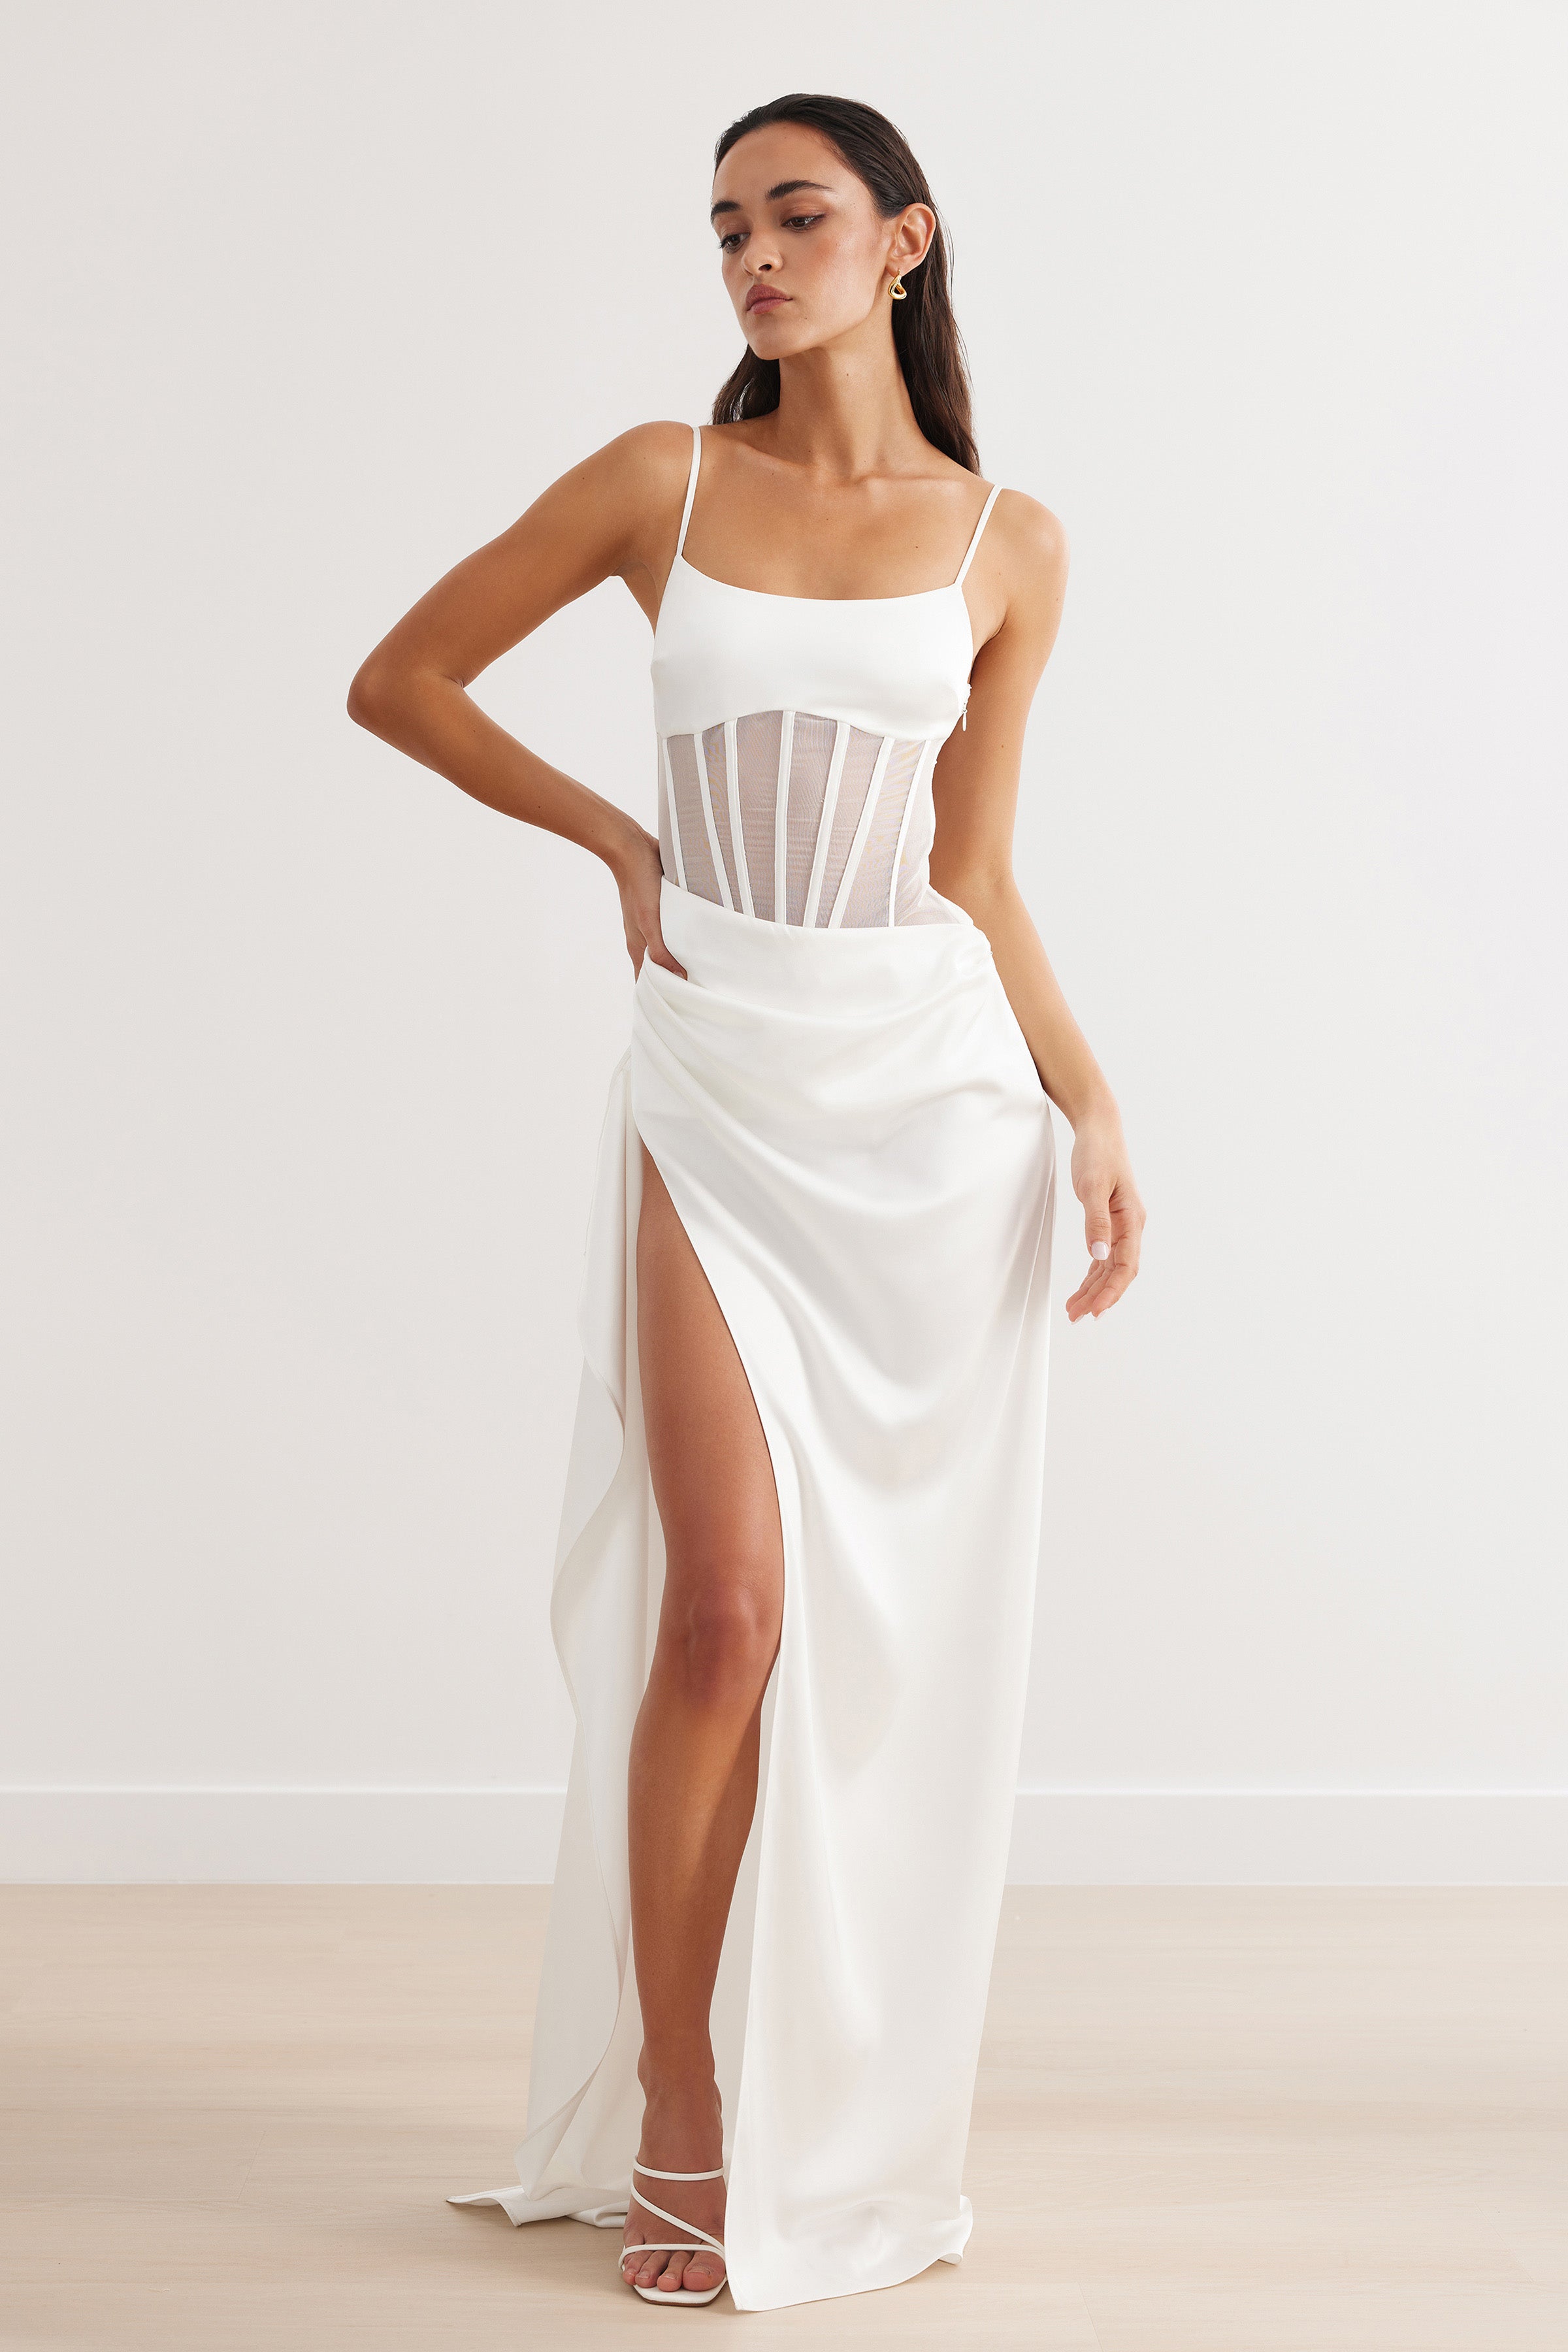 Estelle Dress - White